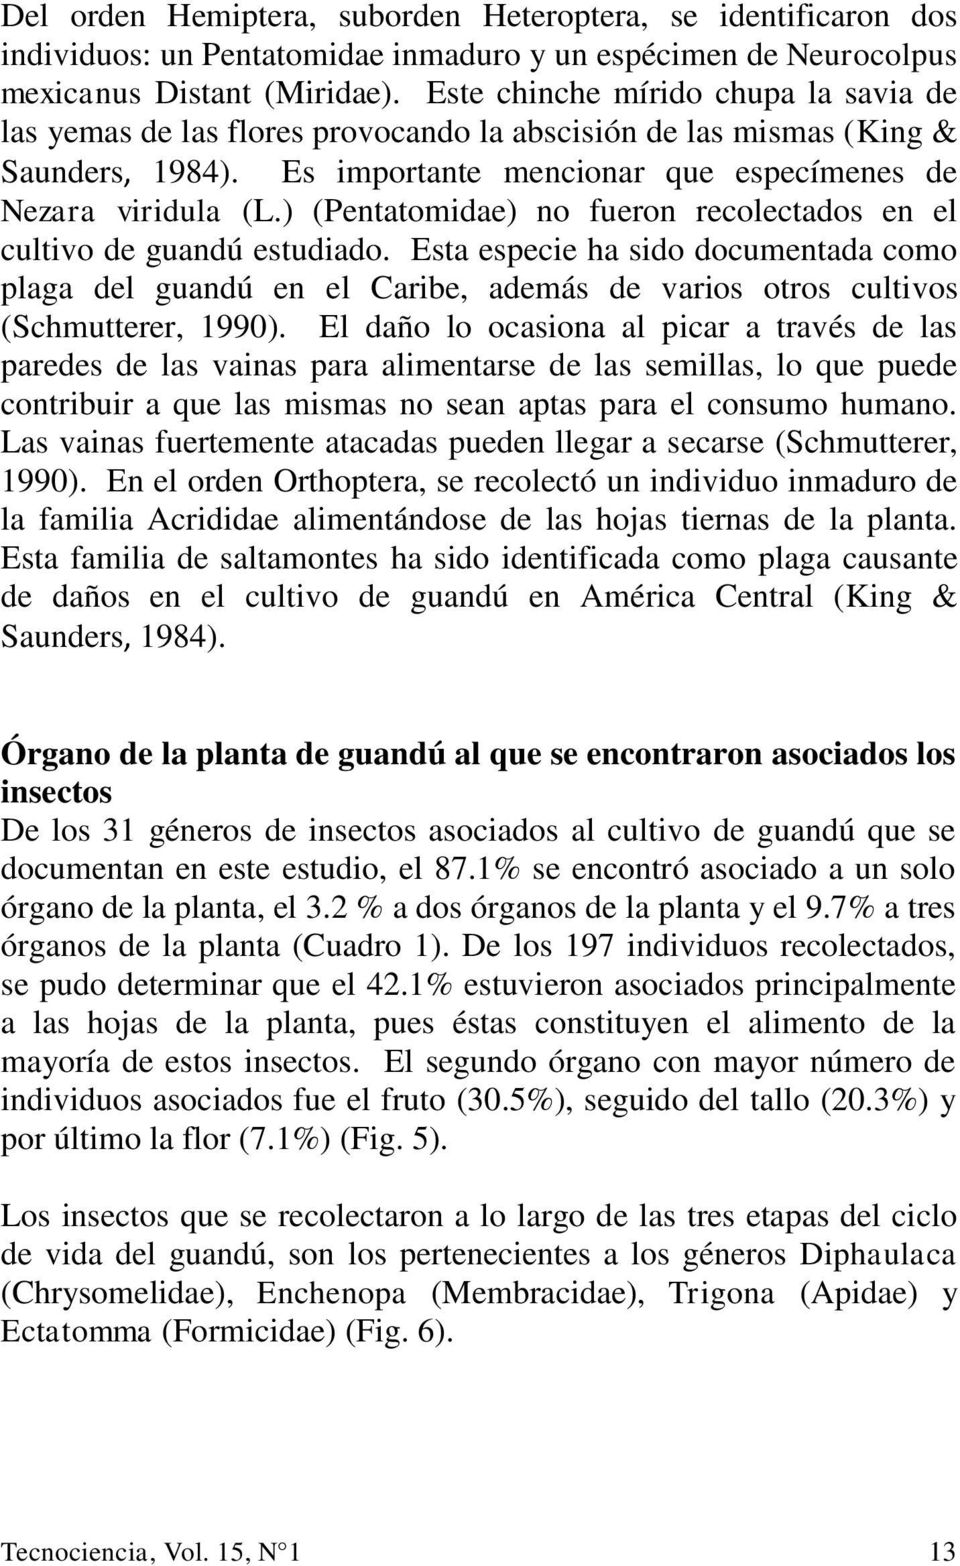 ) (Pentatomidae) no fueron recolectados en el cultivo de guandú estudiado. Esta especie ha sido documentada como plaga del guandú en el Caribe, además de varios otros cultivos (Schmutterer, 1990).